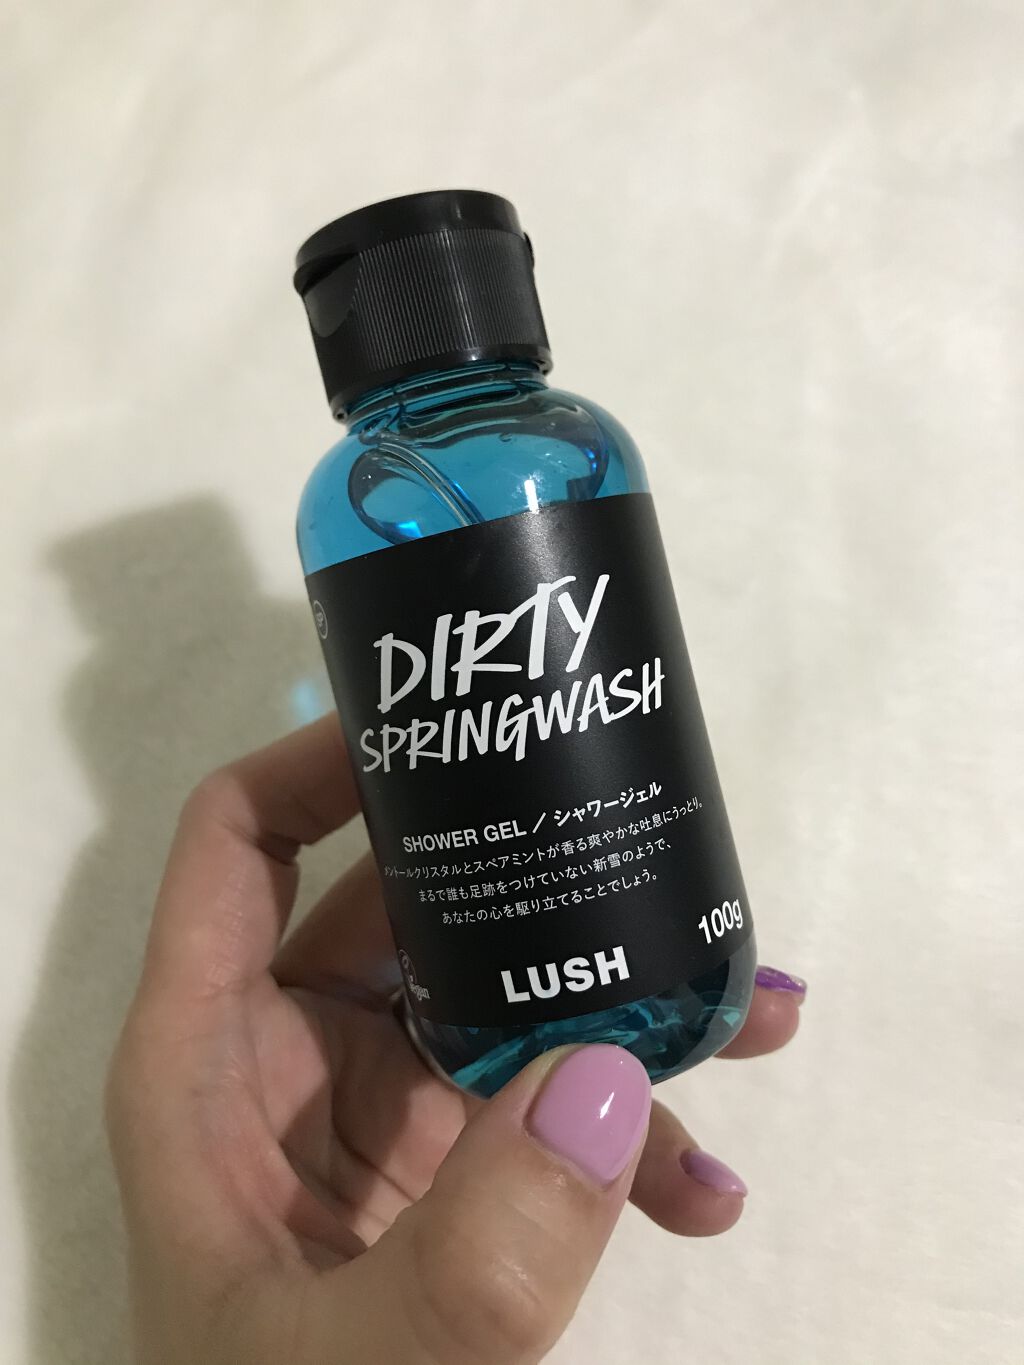 Dirty スプリングウォッシュ ラッシュの口コミ Lushのシャワージェルdirtyspri By 杏奈 乾燥肌 30代後半 Lips